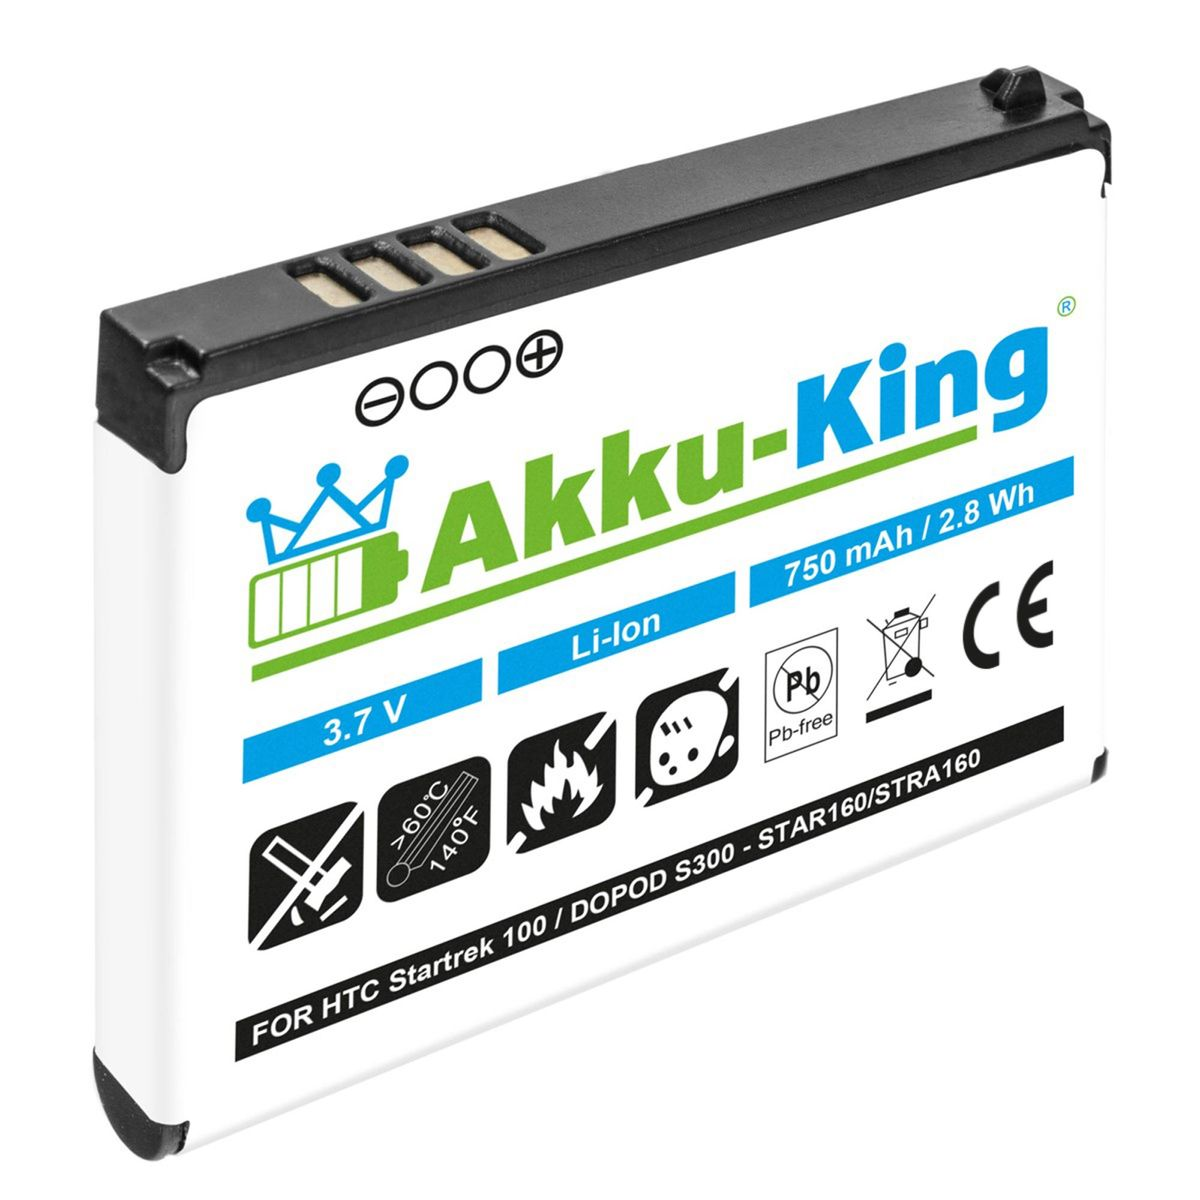 AKKU-KING Akku kompatibel 3.7 Handy-Akku, Volt, Li-Ion STAR160 HTC mit 750mAh